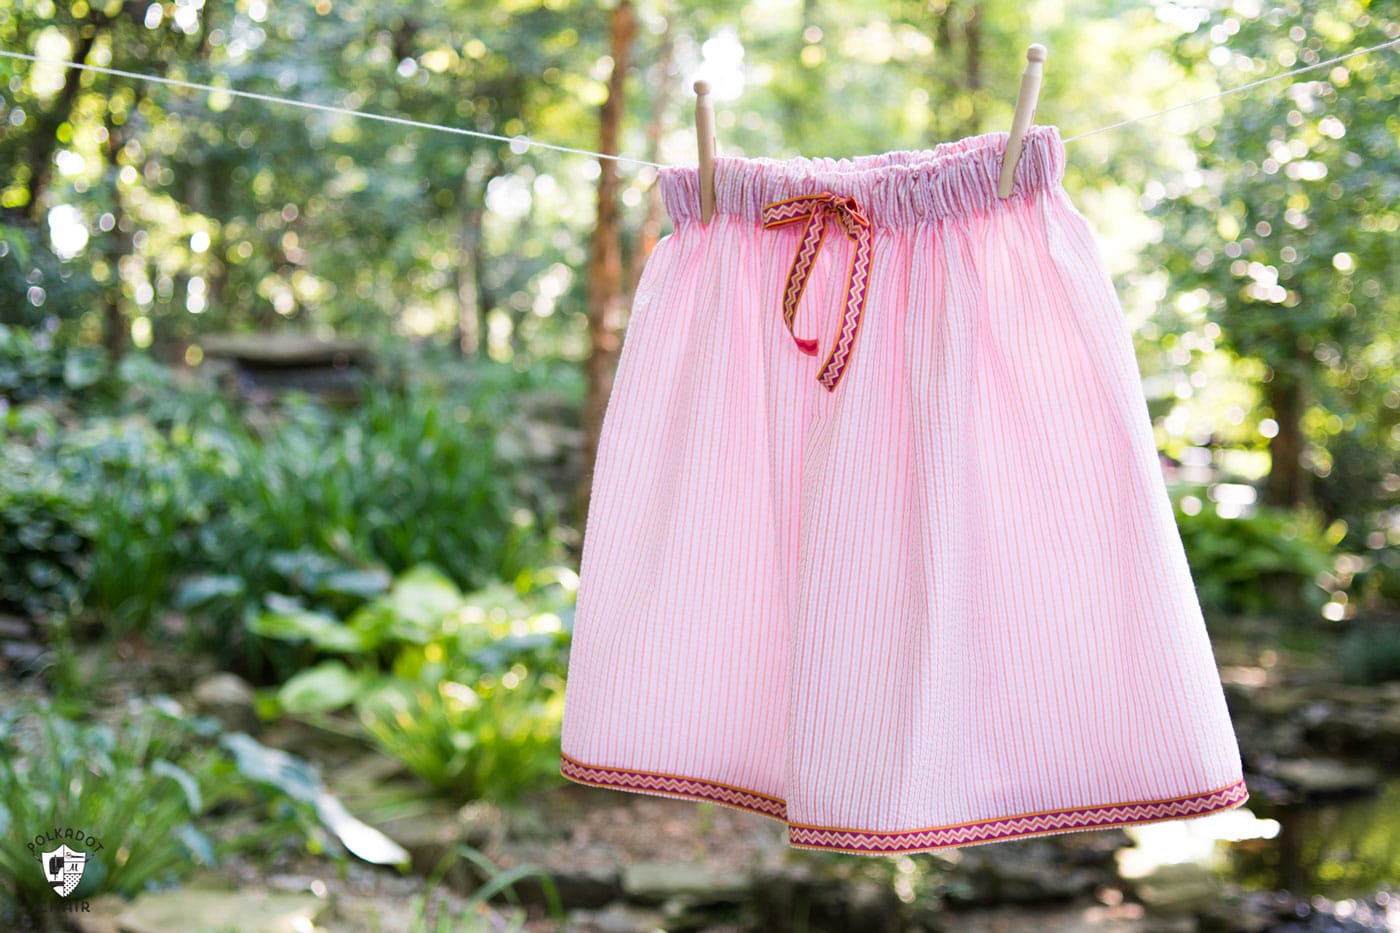 Comment coudre une jupe simple parfaite pour l'été. Un tuto de couture de jupe vraiment mignon comme une jupe en seersucker !